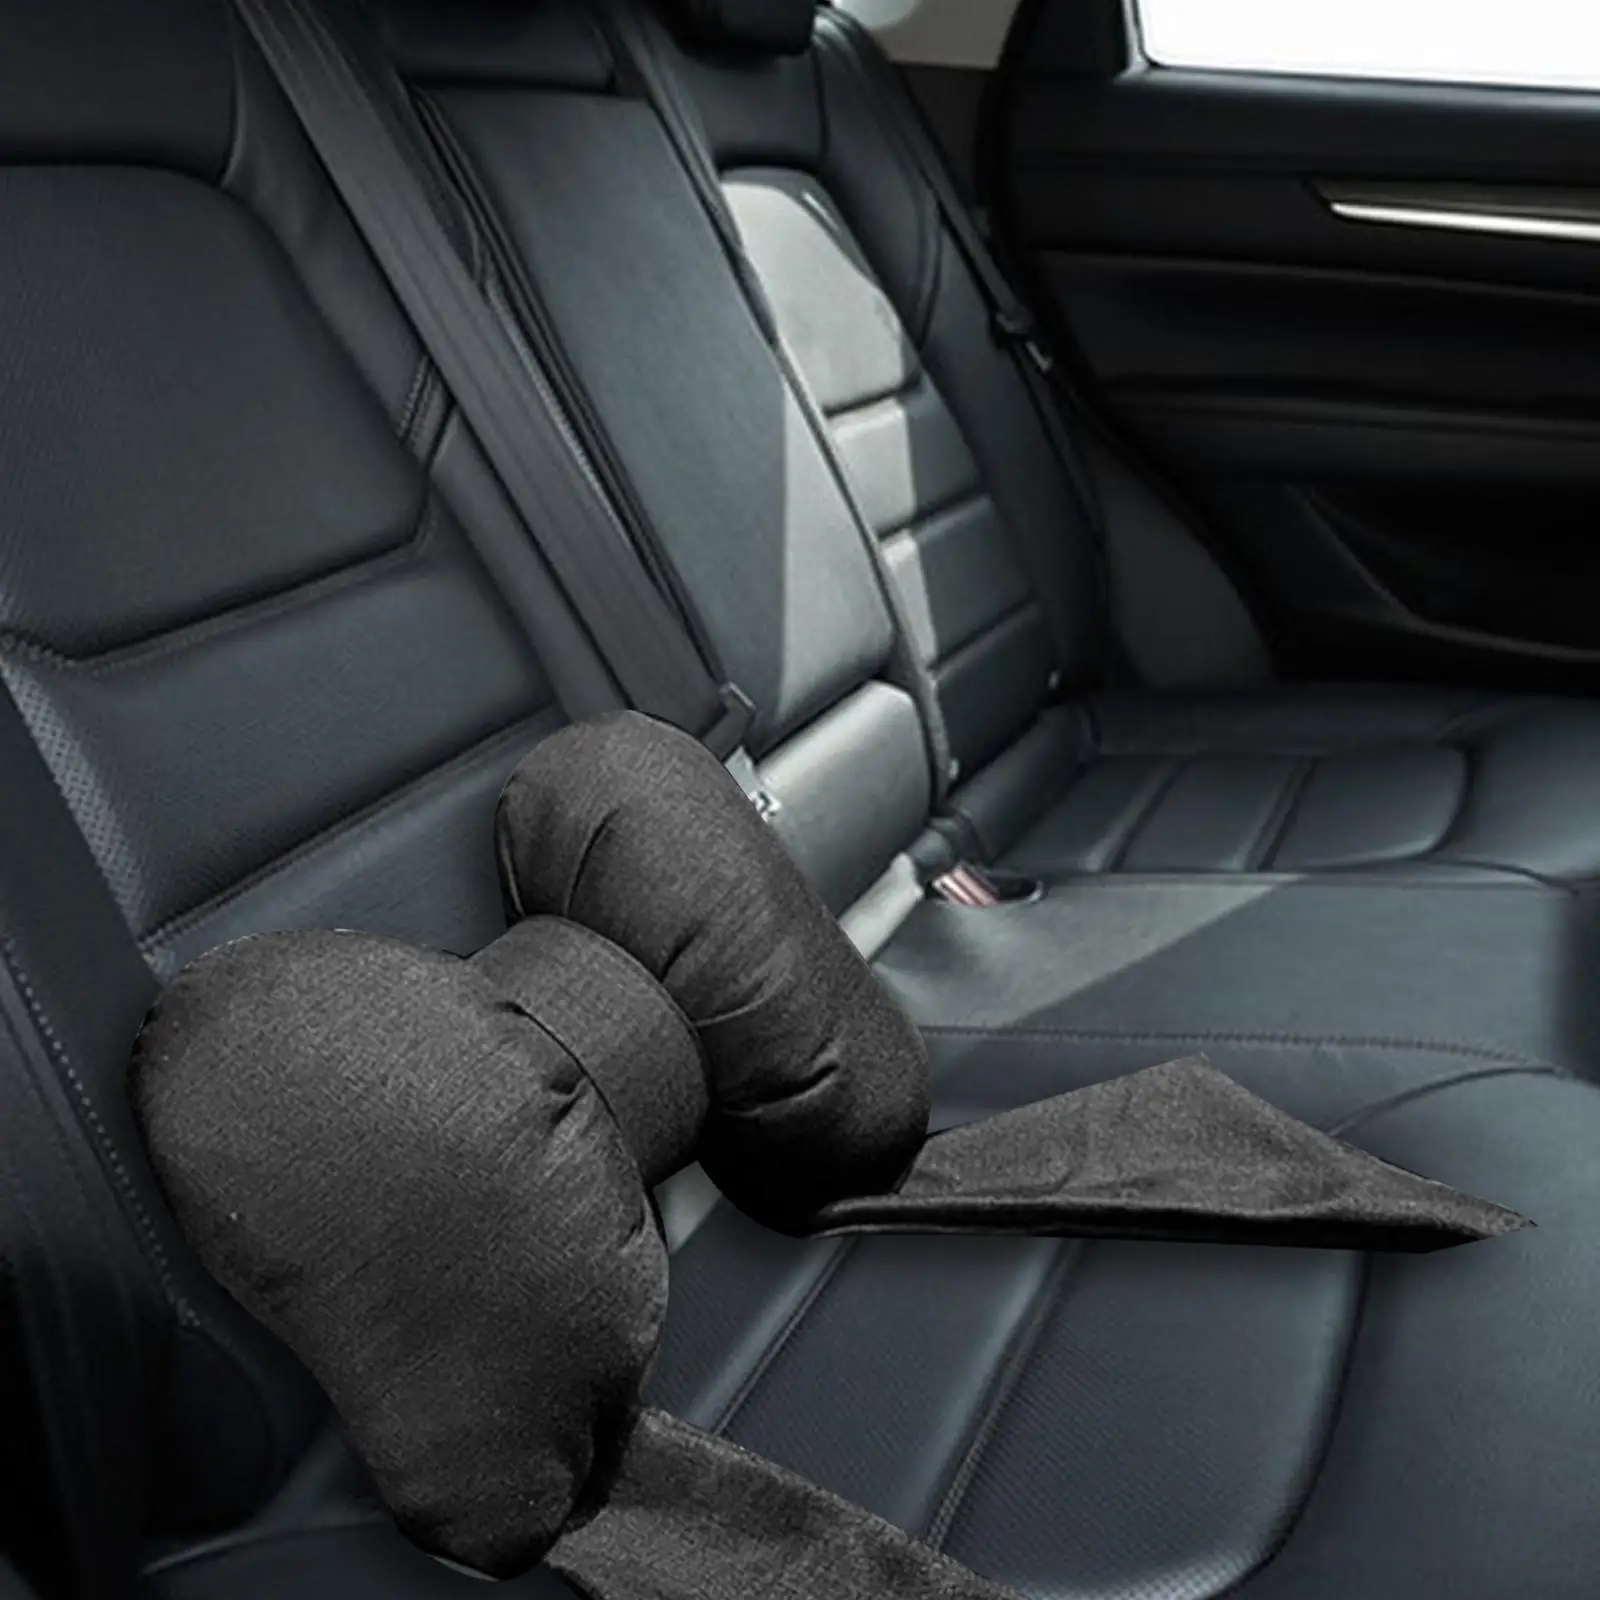 Car Lumbar Cushion Cute Bow Tie Interior Accessories Decorative Universal Car